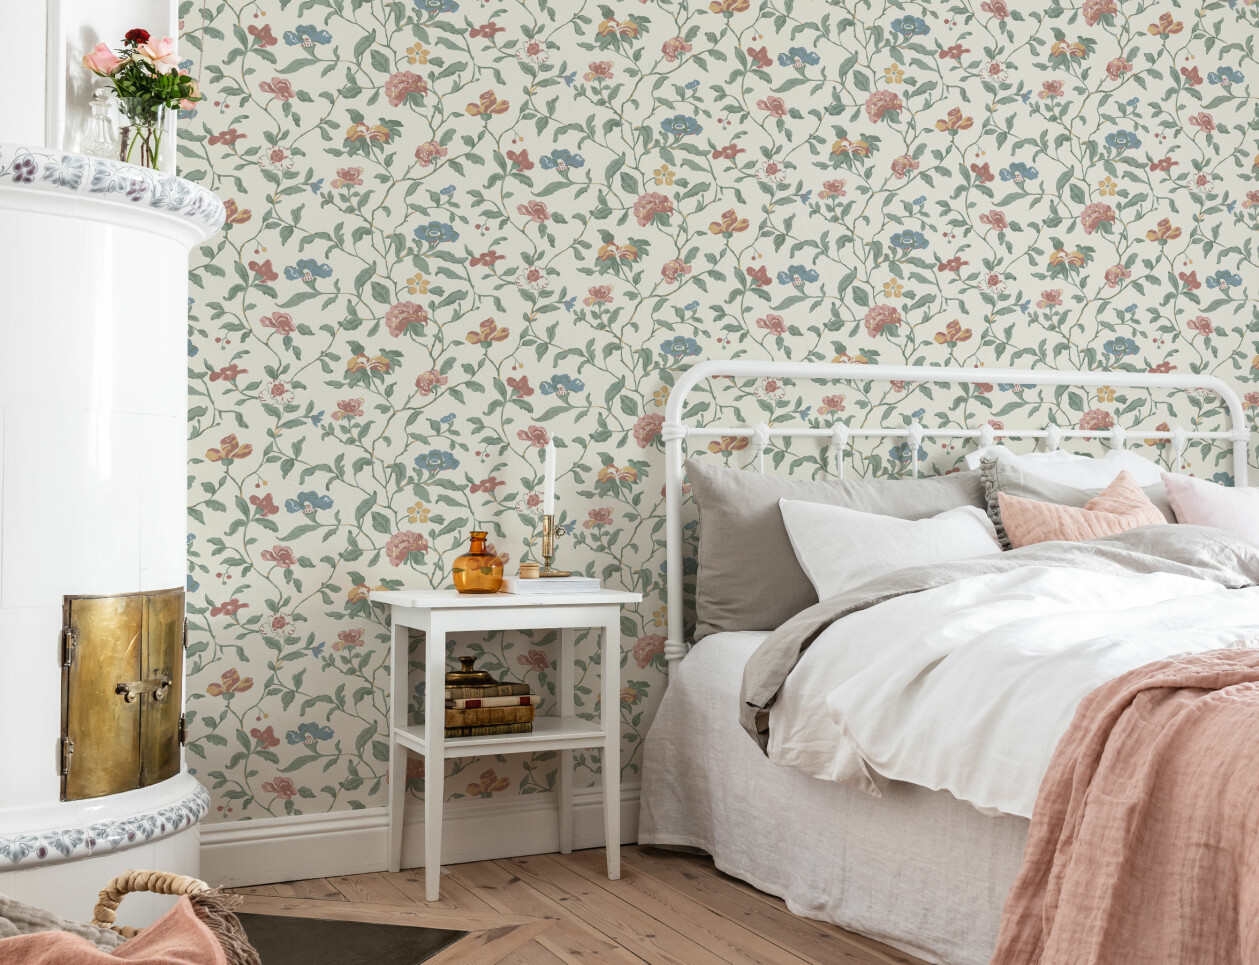 Ett sovrum med en vit kakelugn, brädgolv och en säng med fluffiga ljusa lakan. Väggarna är täckta i en krämfärgad tapet med slingrande blomsterrankor.